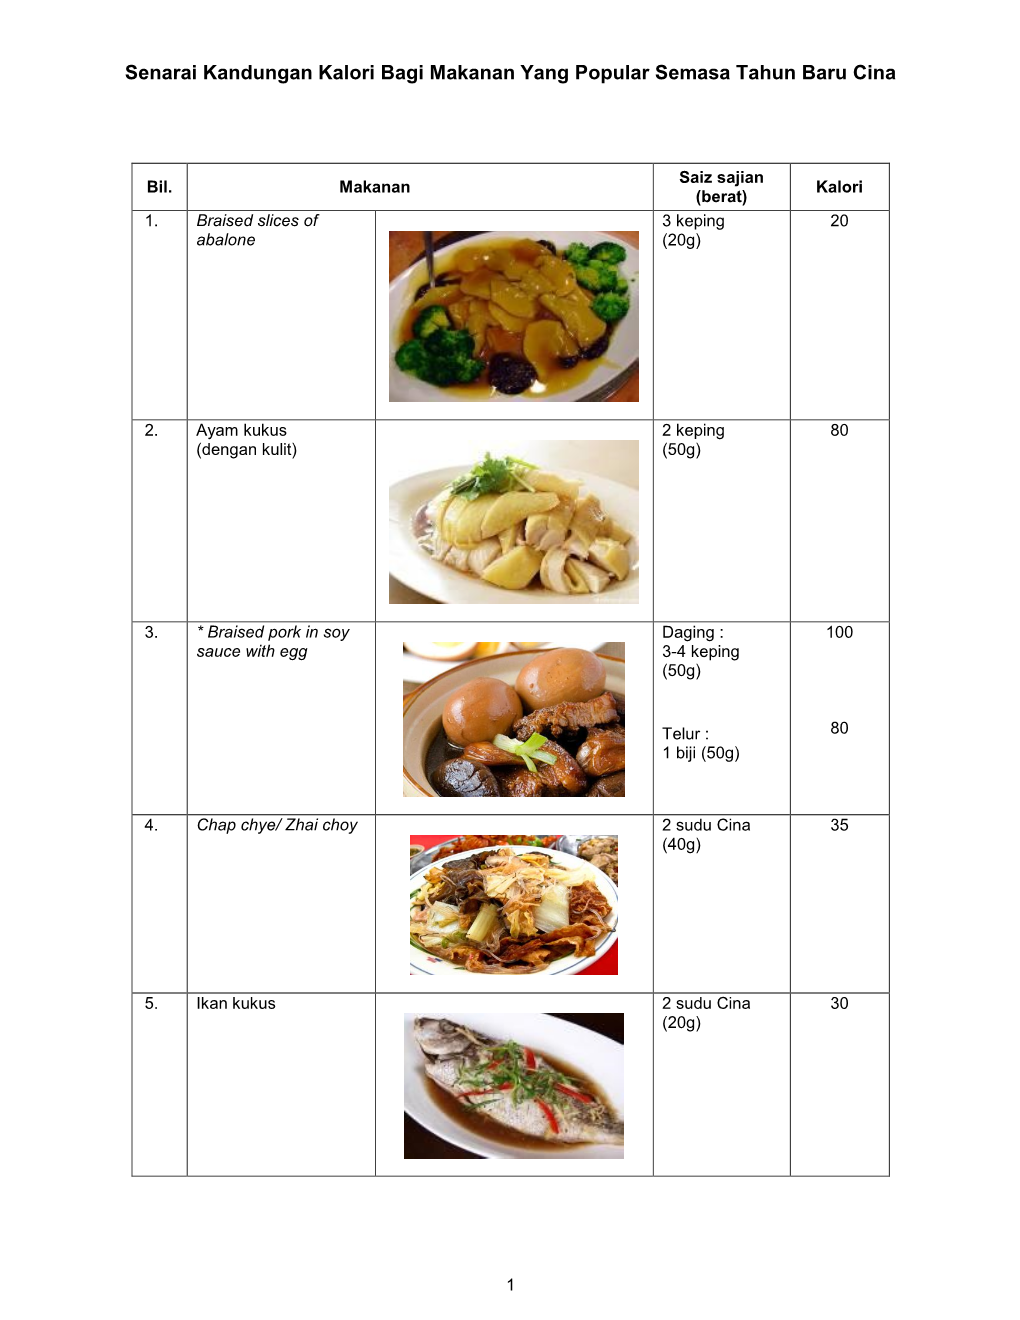 Senarai Kandungan Kalori Bagi Makanan Yang Popular Semasa Tahun Baru Cina